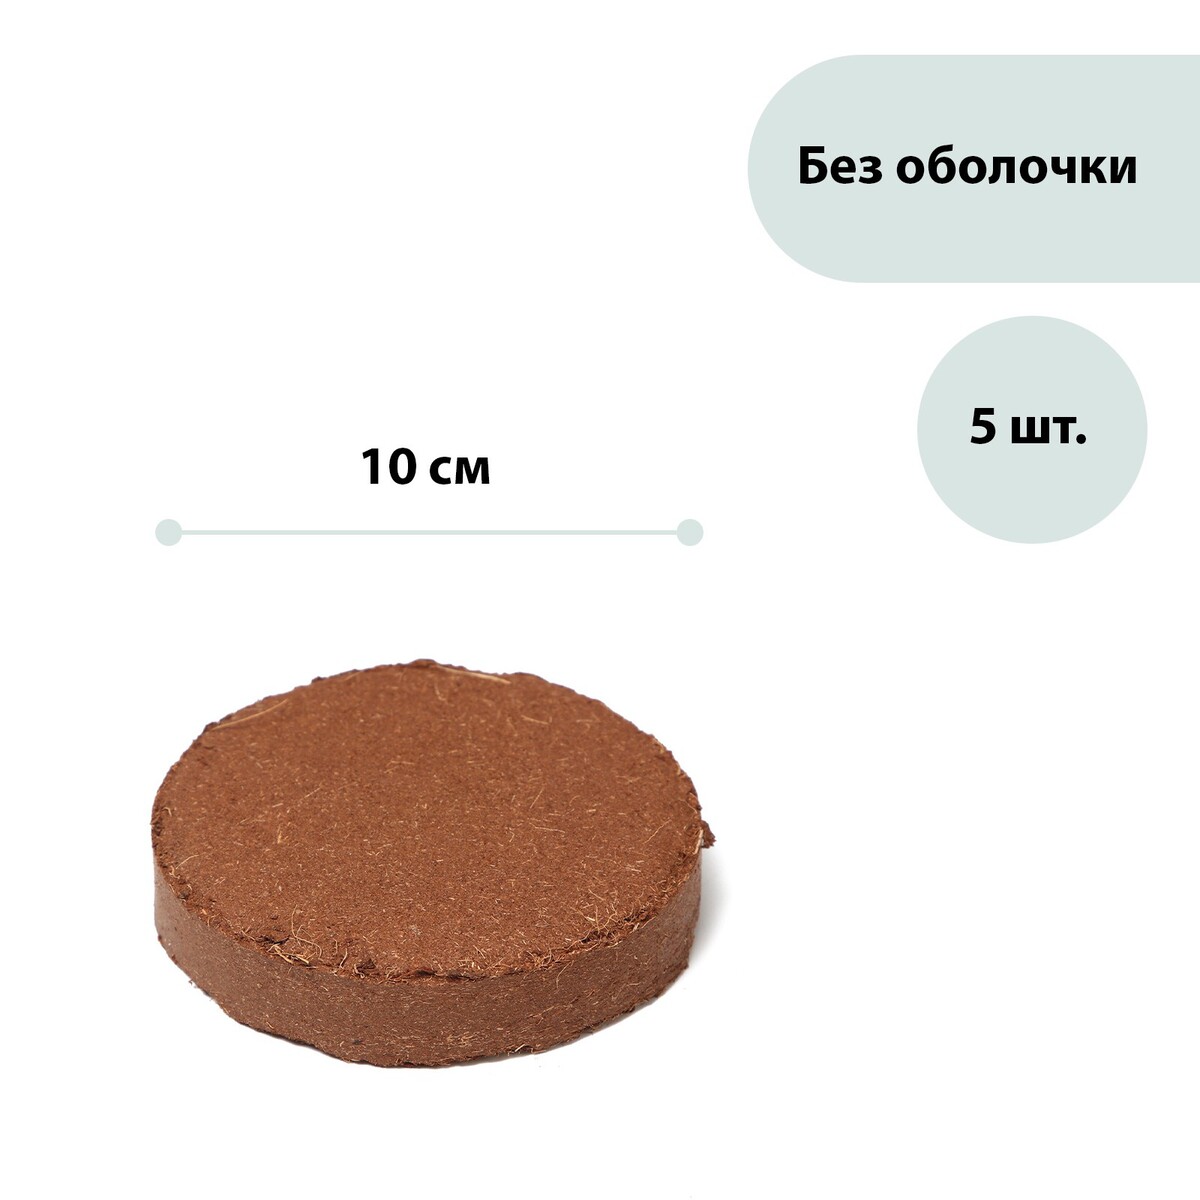 Субстрат кокосовый в таблетках, 4,5 л, d = 10 см, набор 5 шт., без оболочки, greengo поплавок дозатор kokido для химии в таблетках с термометром синий k619bu aq12171